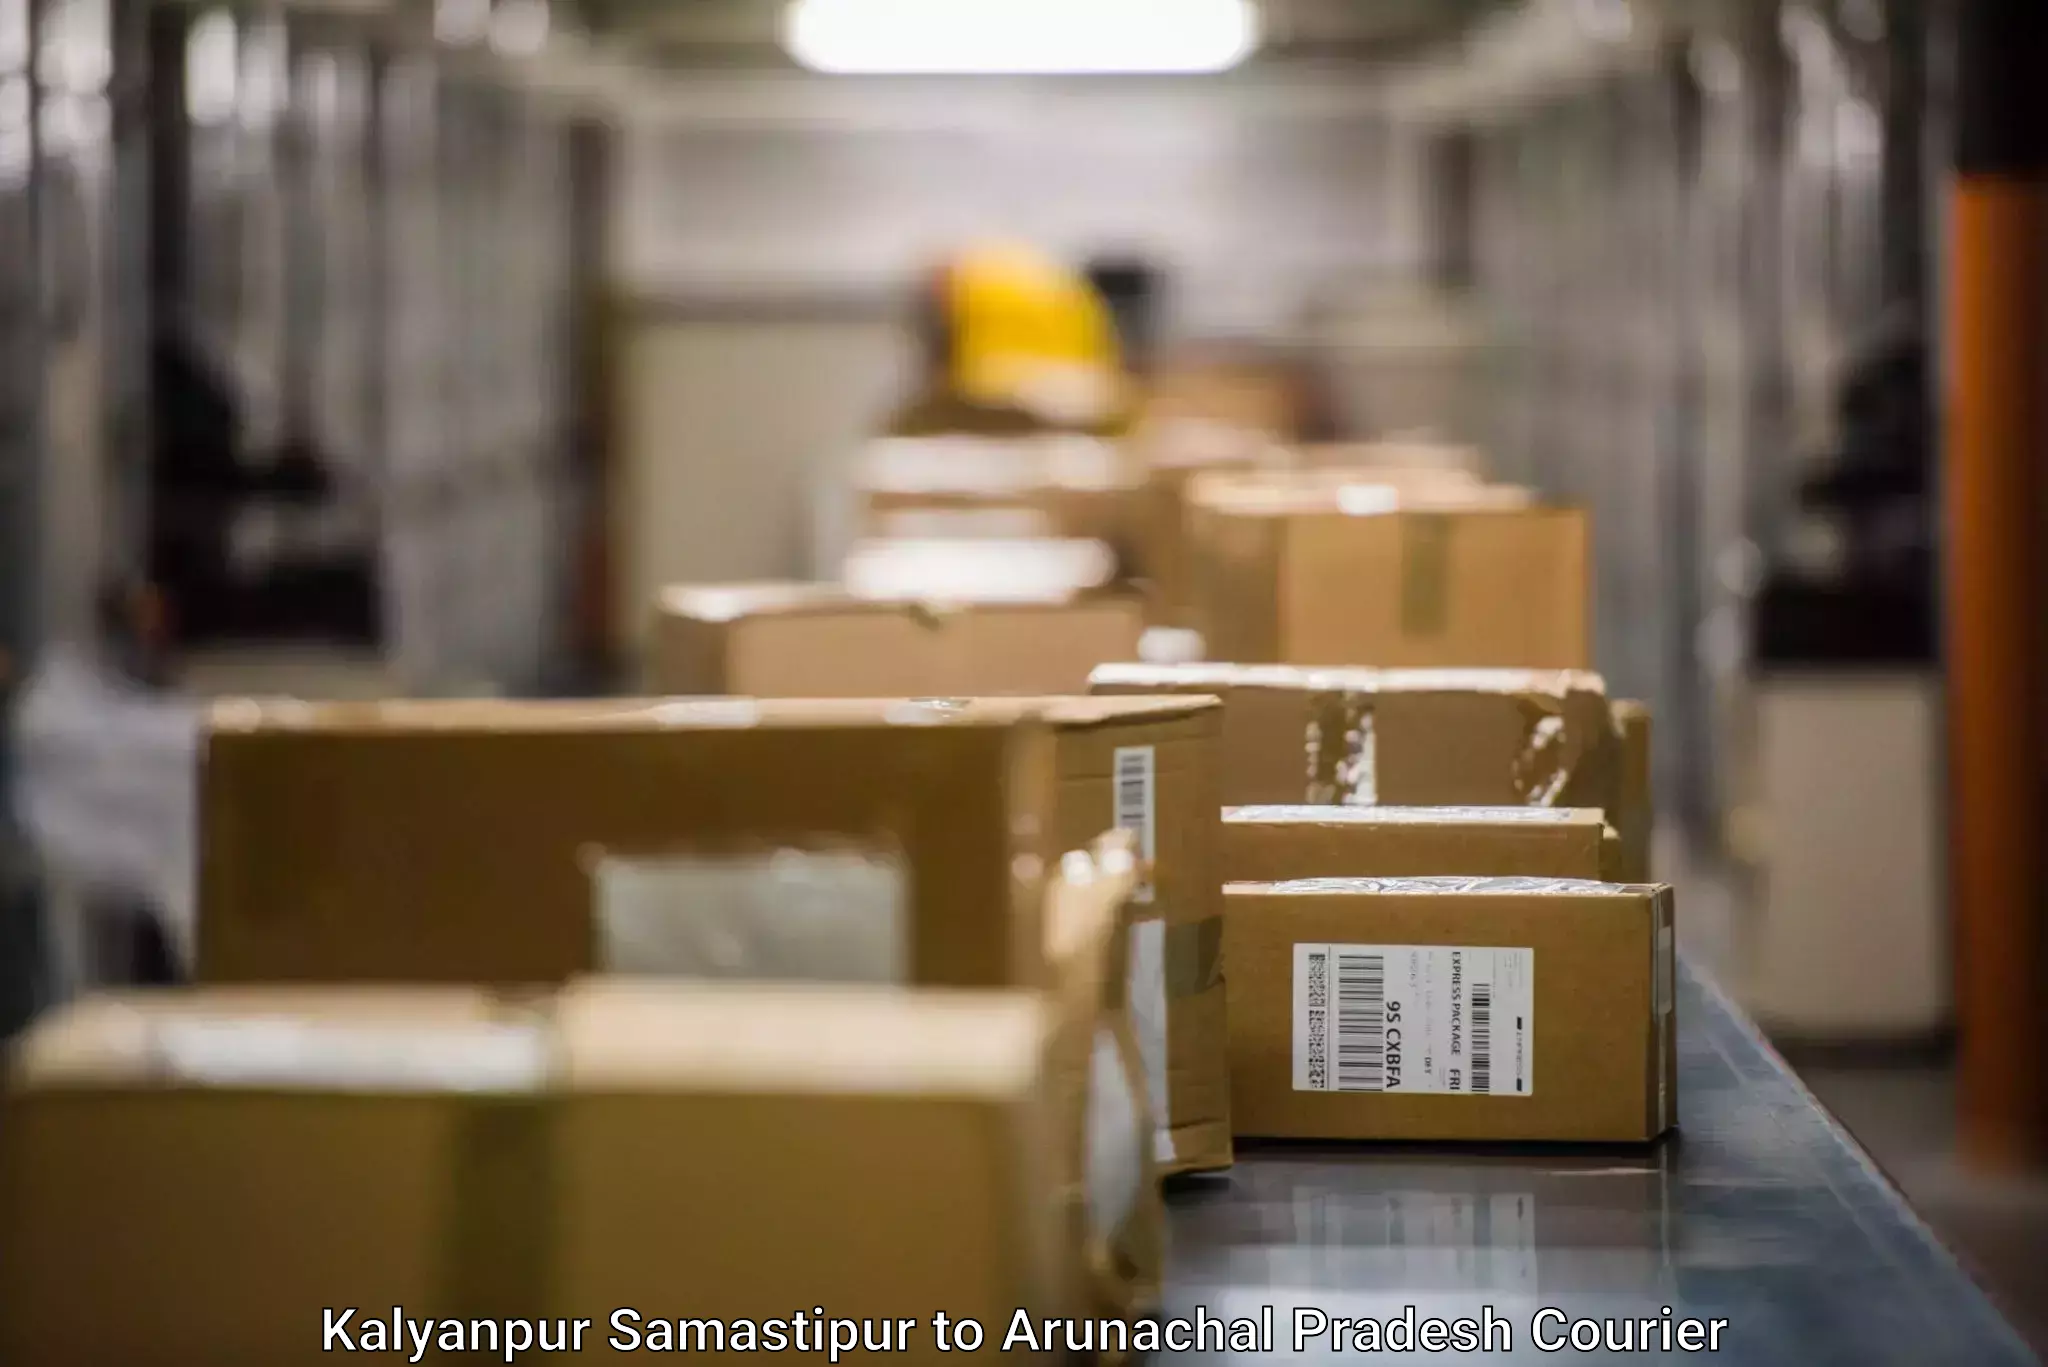 Fragile item shipping Kalyanpur Samastipur to Arunachal Pradesh